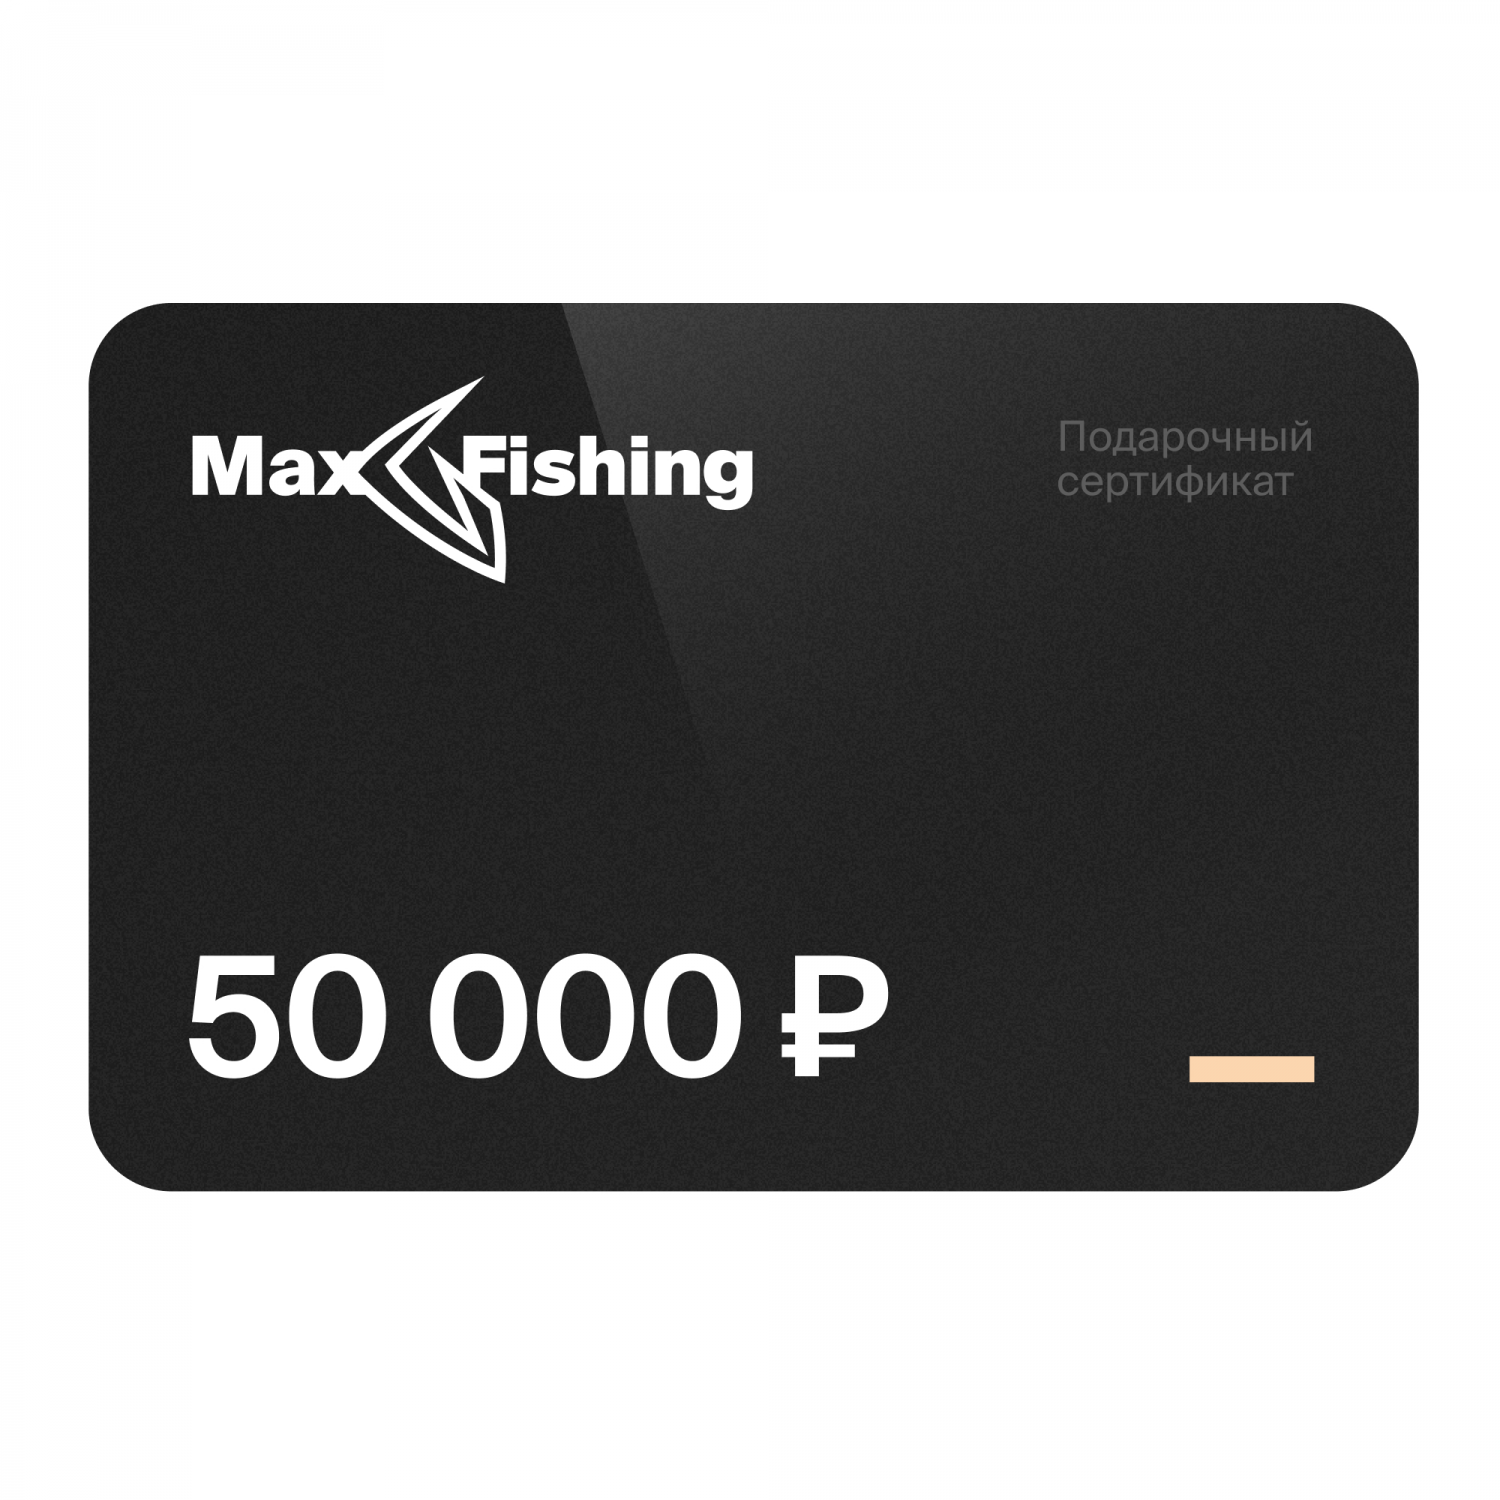 Подарочный сертификат MaxFishing 50 000 ₽ подарочный сертификат maxfishing 20